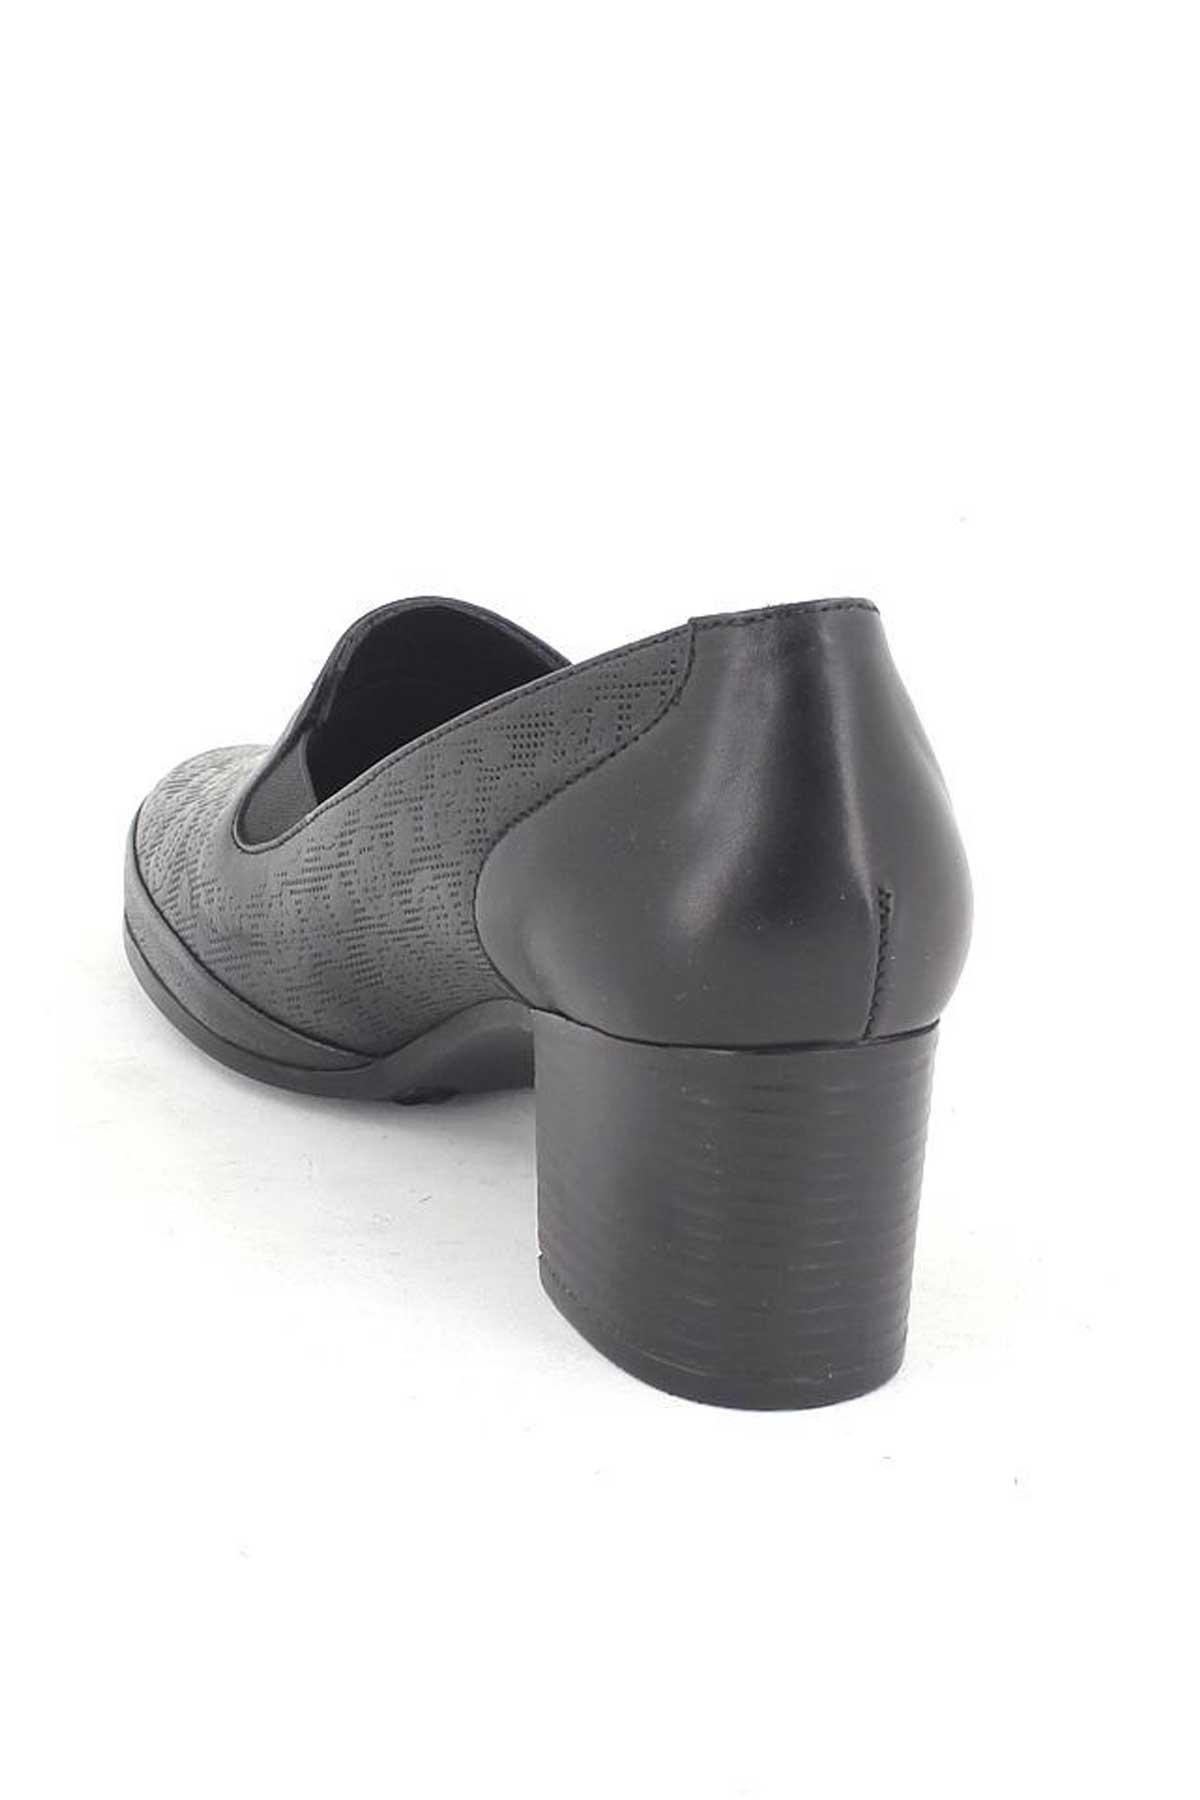 Kadın Topuklu Deri Ayakkabı Baskılı Siyah 1911902K